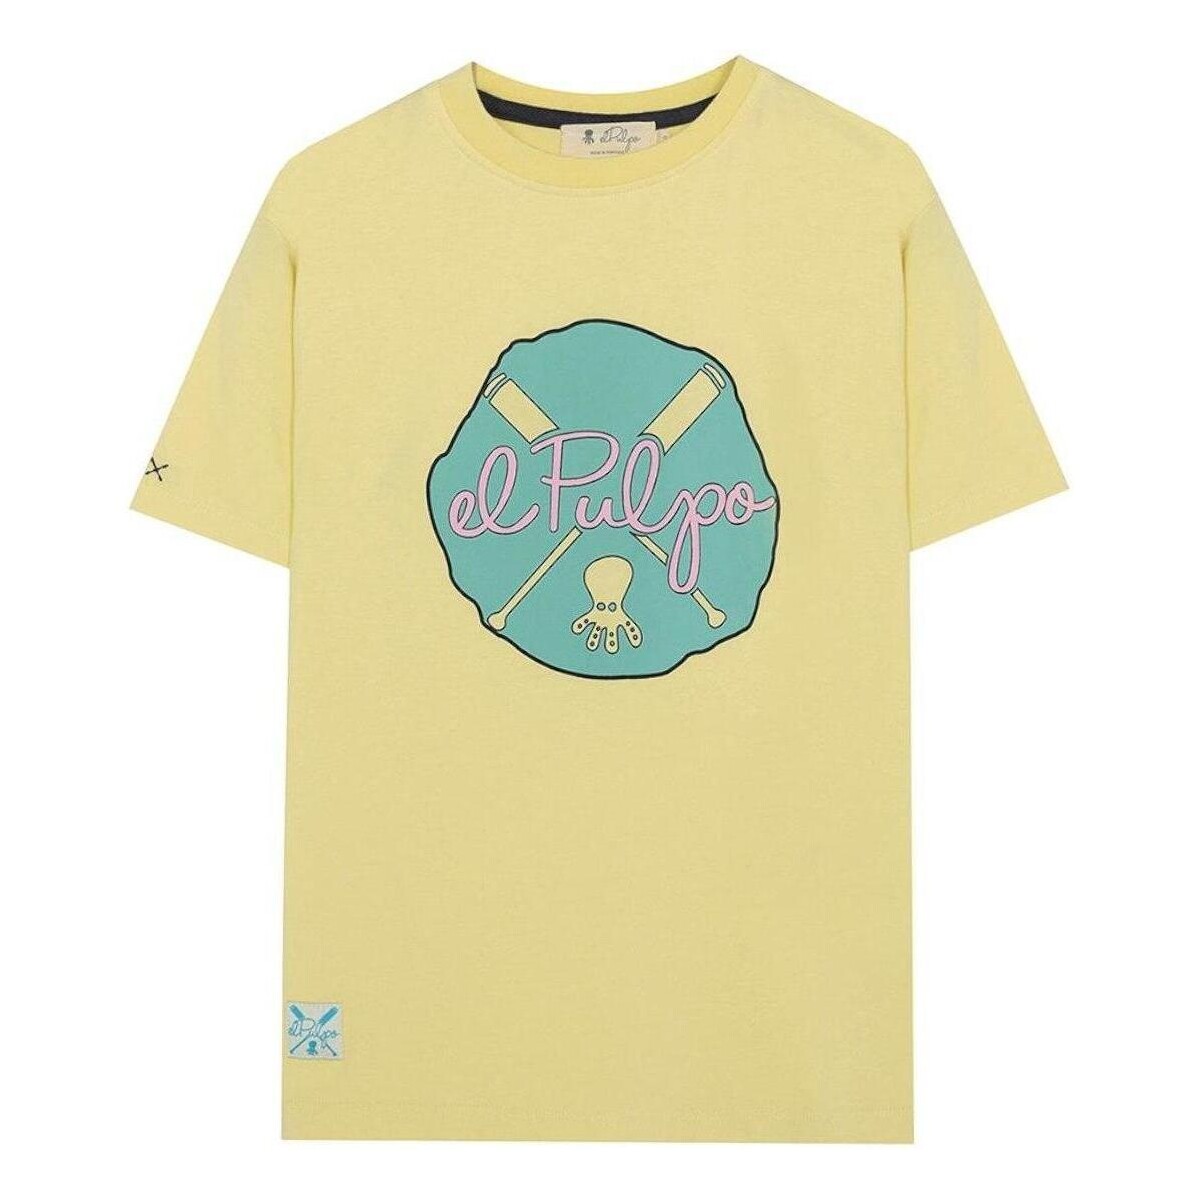 tekstylia Chłopiec T-shirty z krótkim rękawem Elpulpo  Żółty